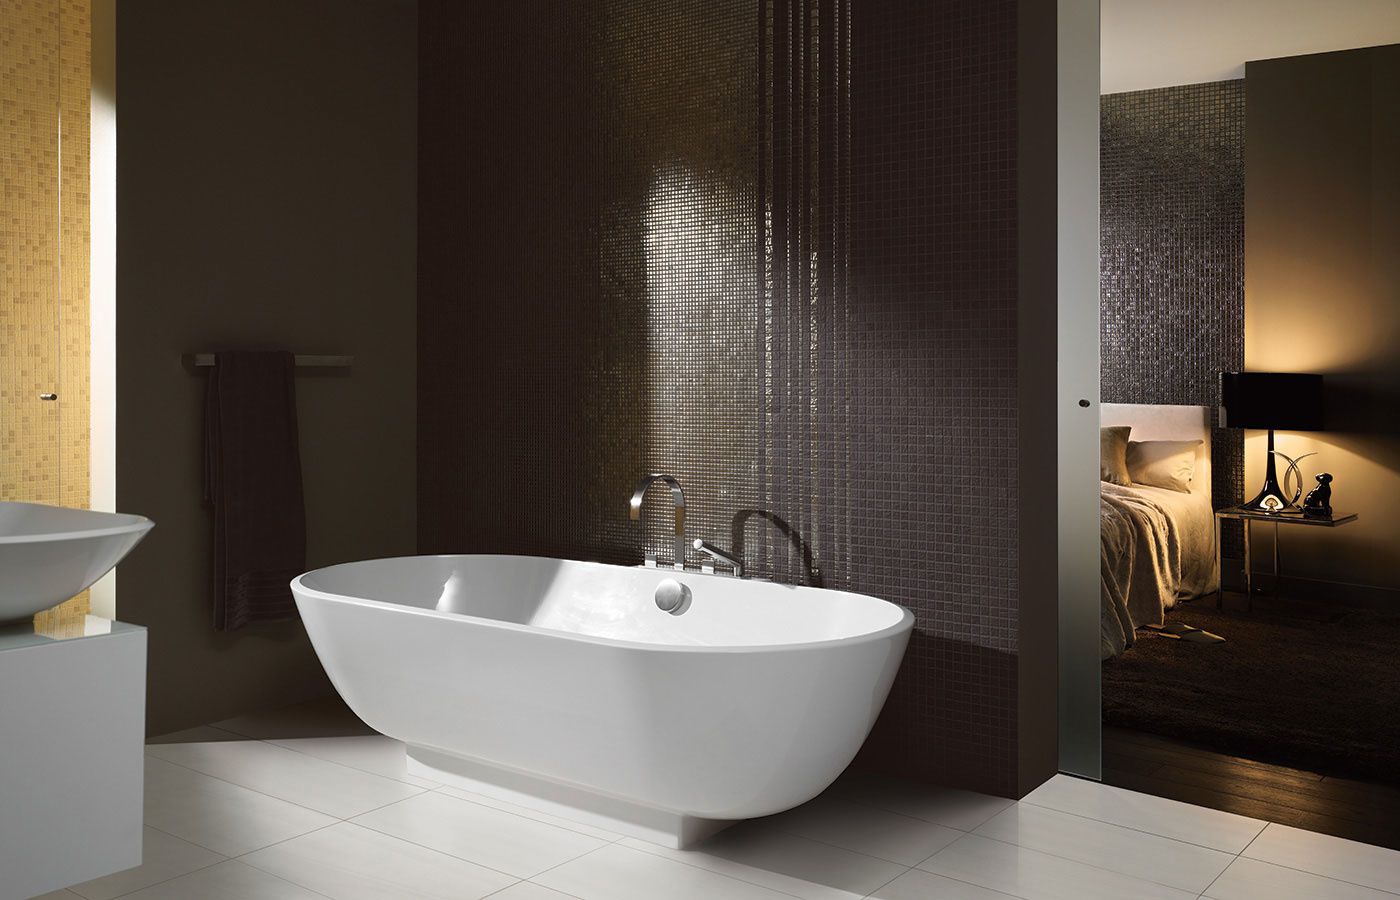 Salle de bain - Baignoire - Décoration - Wallpaper - Free